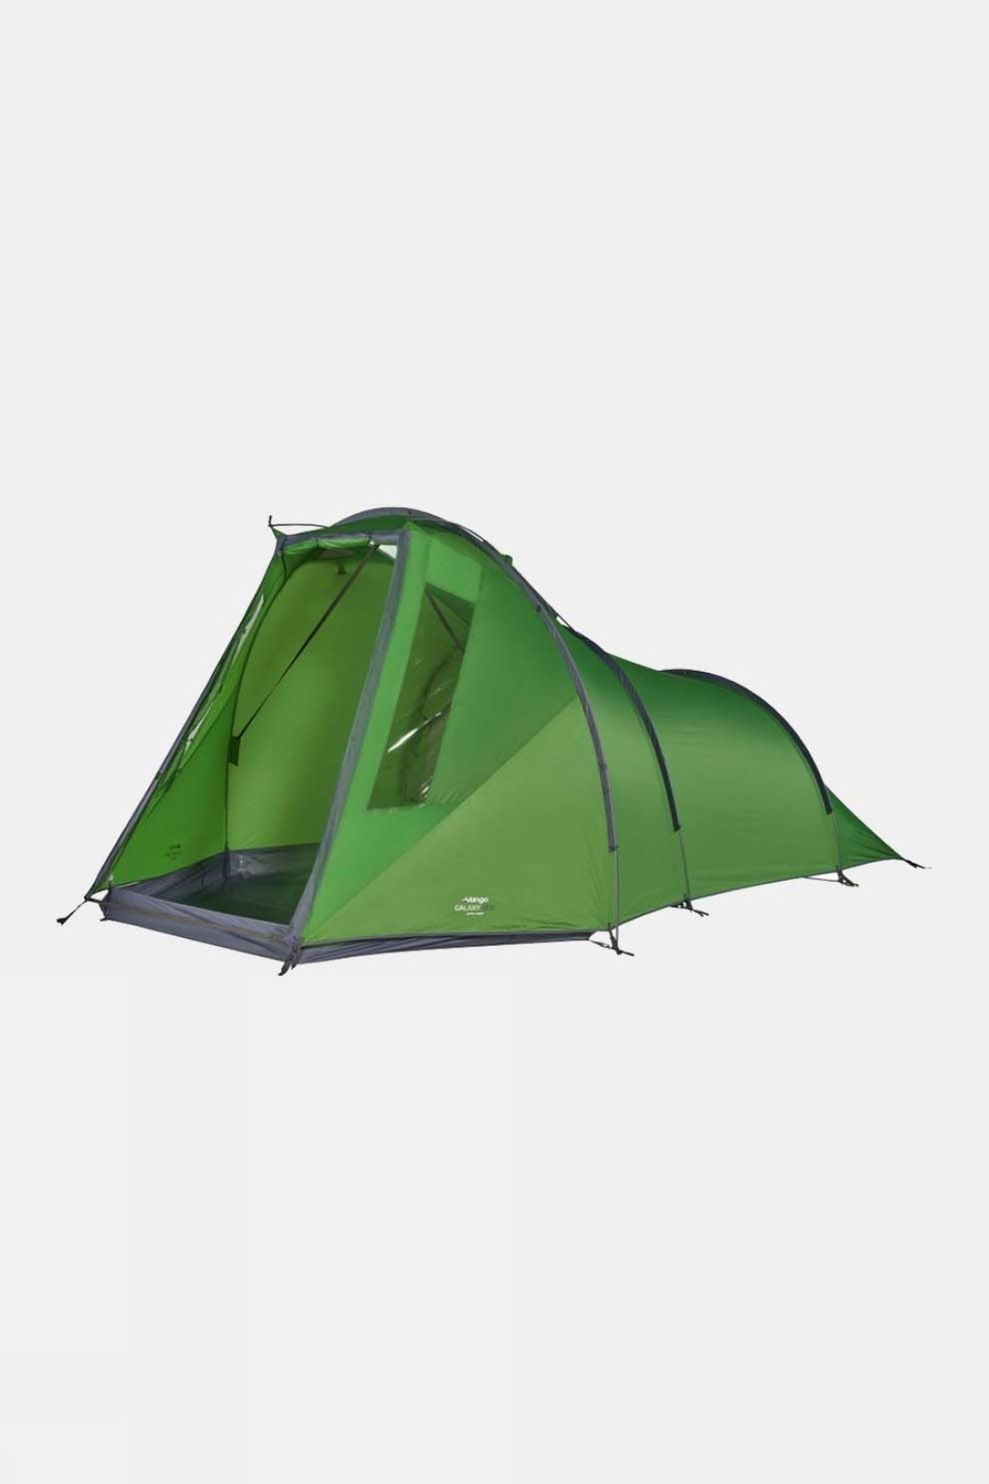 Vango Galaxy 300 Tent